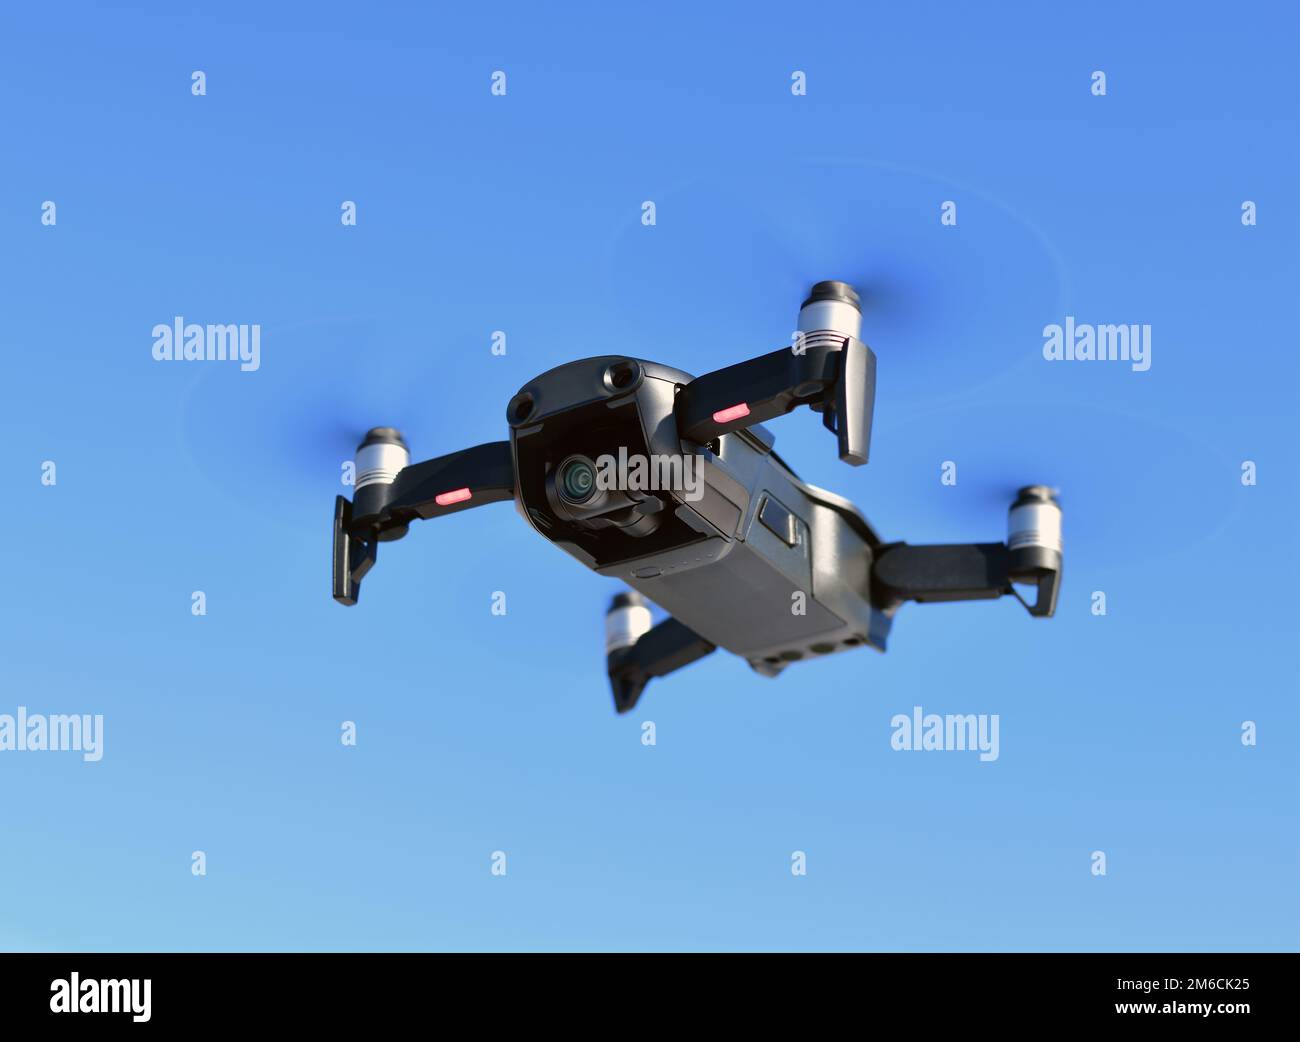 Vehículos aéreos no tripulados, negro con una cámara Foto de stock